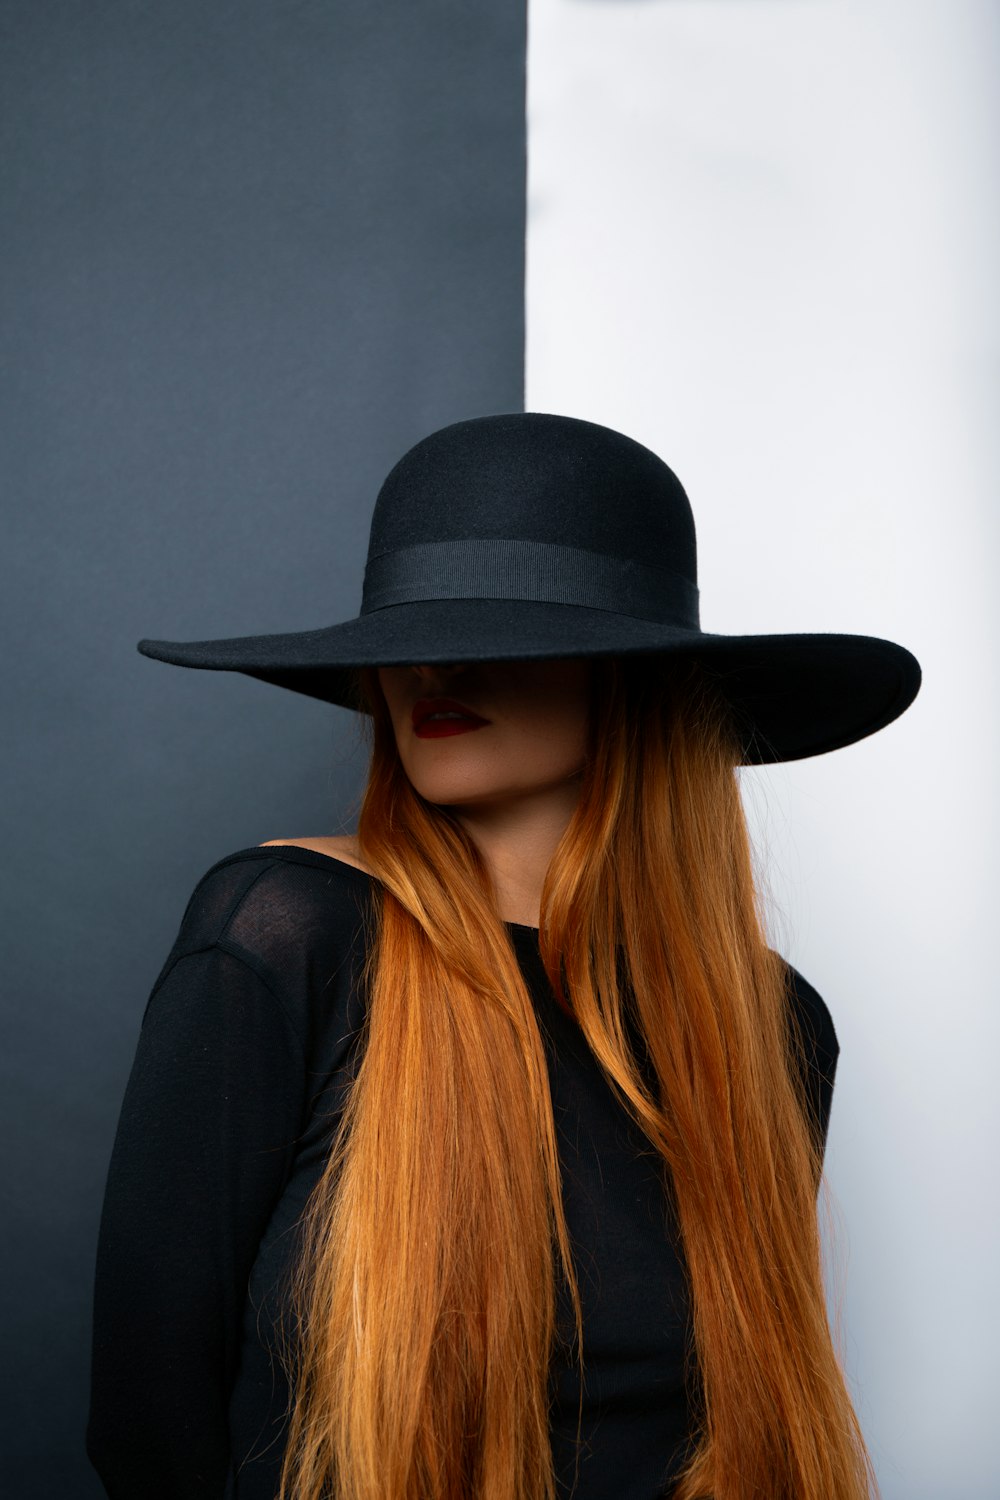 Eine Frau mit langen roten Haaren mit schwarzem Hut